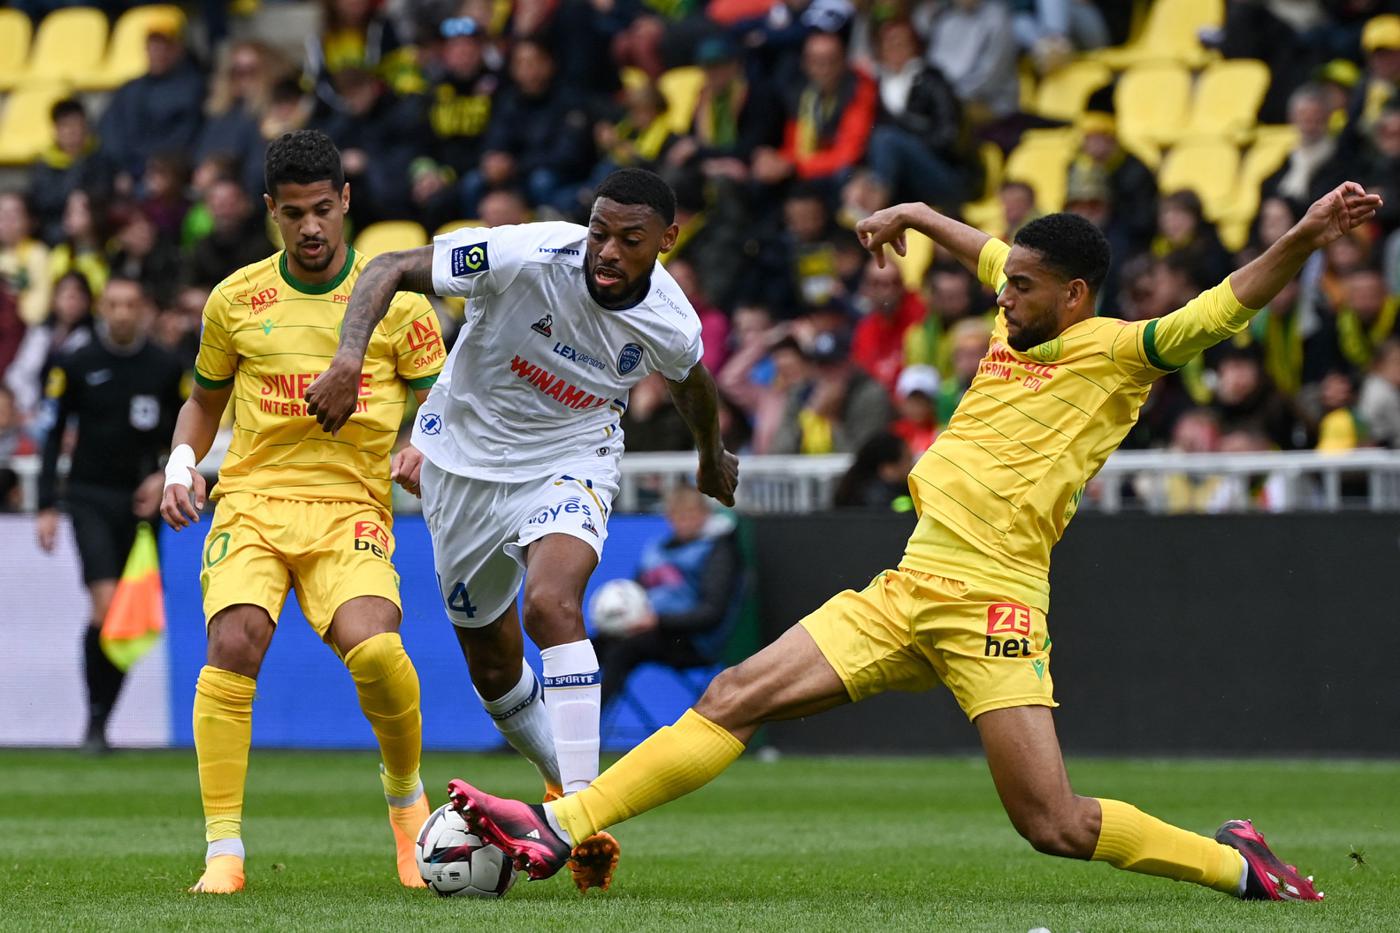 Nantes - Troyes - 2:2. Mistrzostwa Francji, runda 32. Przegląd meczu, statystyki.